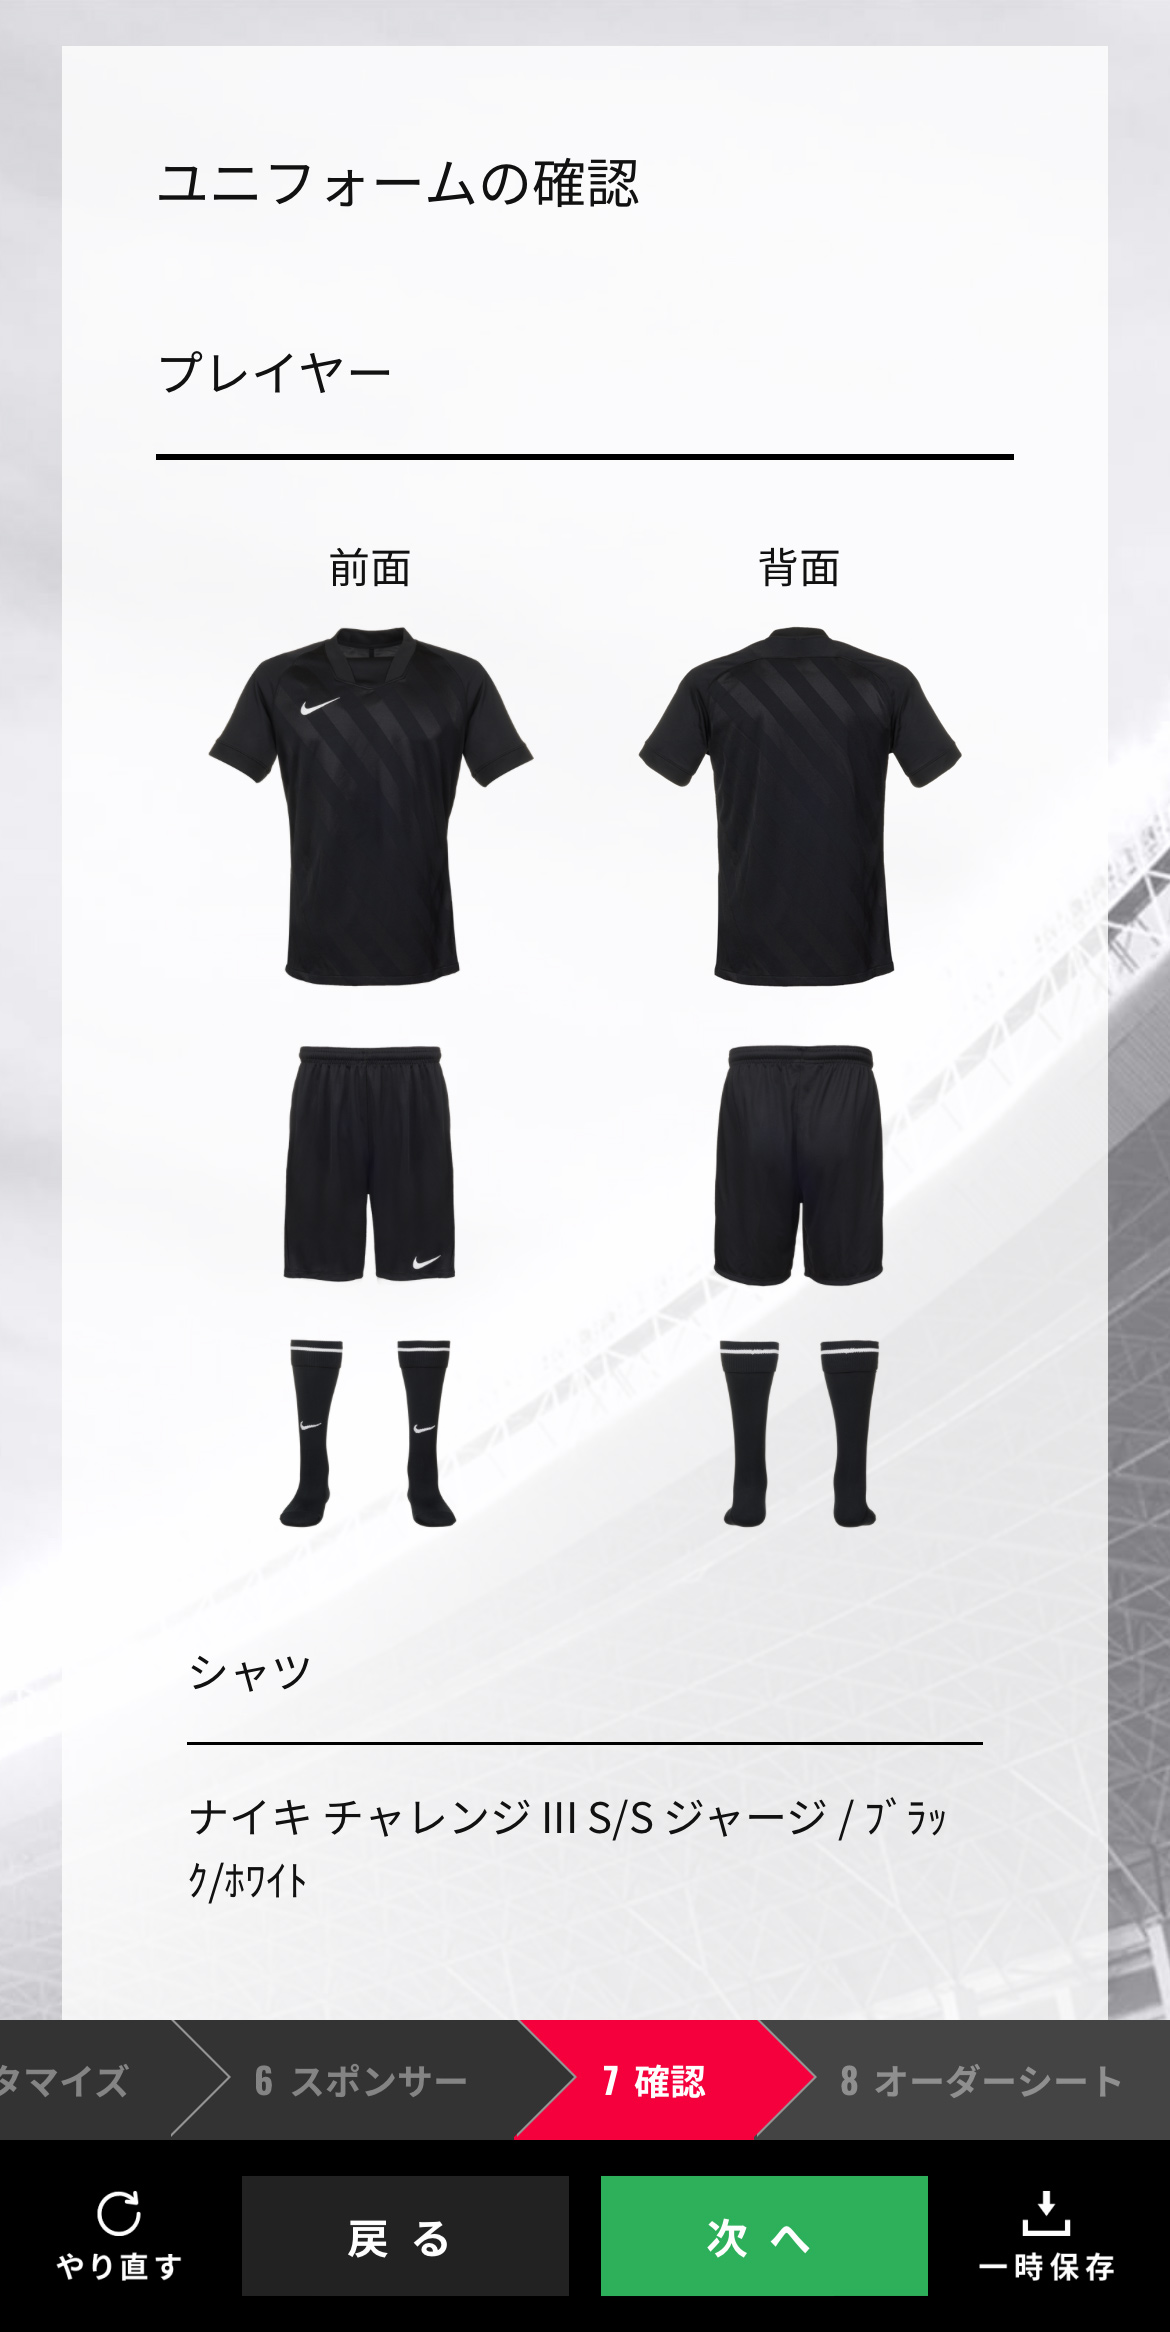 日本のサッカーのユニフォームに 黒 が少ない理由